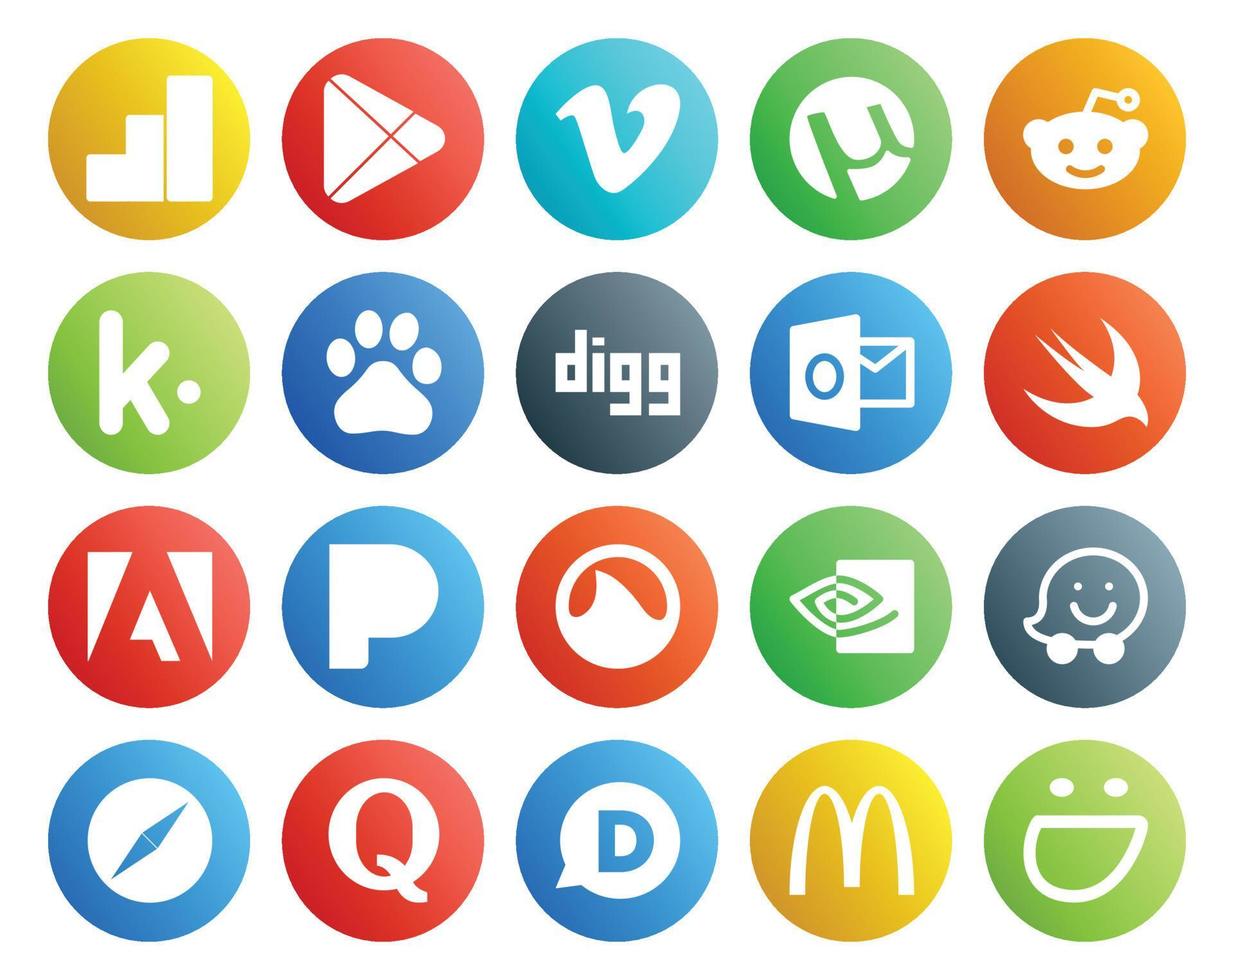 paquete de 20 íconos de redes sociales que incluye safari nvidia baidu grooveshark adobe vector